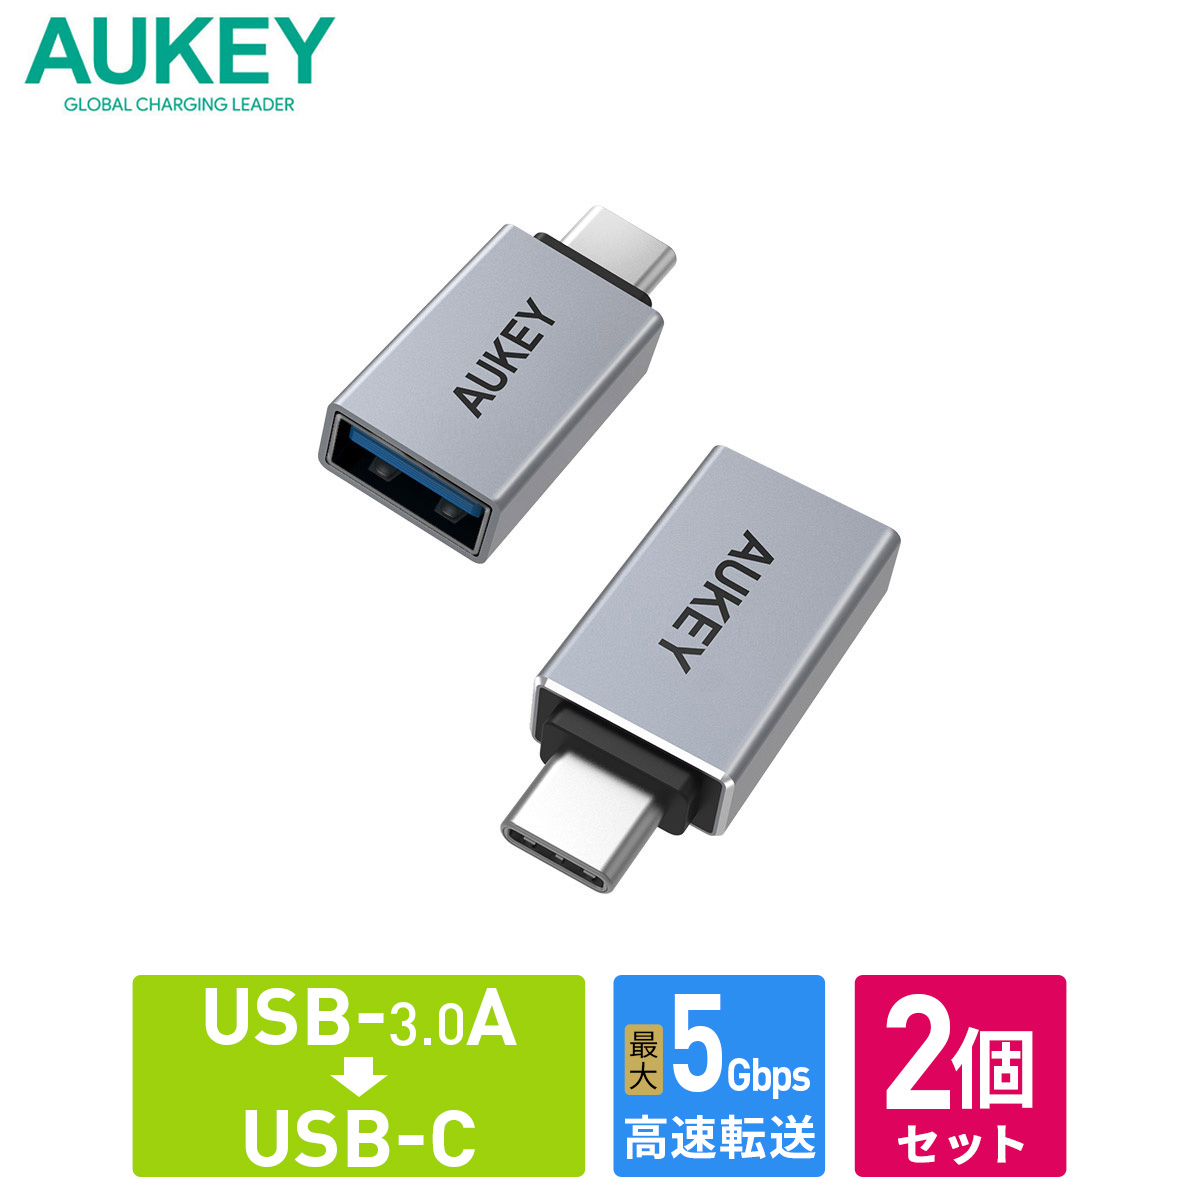 USB変換アダプター AUKEY オーキー USB3.0 Type-A To C Unity Series CB-A22 アルミ素材 シルバー Type -C 変換コネクタ プラグ 変換 タイプC 充電 データ転送 USB-A USB-C 56kレジスタ 56kΩ抵抗 2年保証 USBハブ 